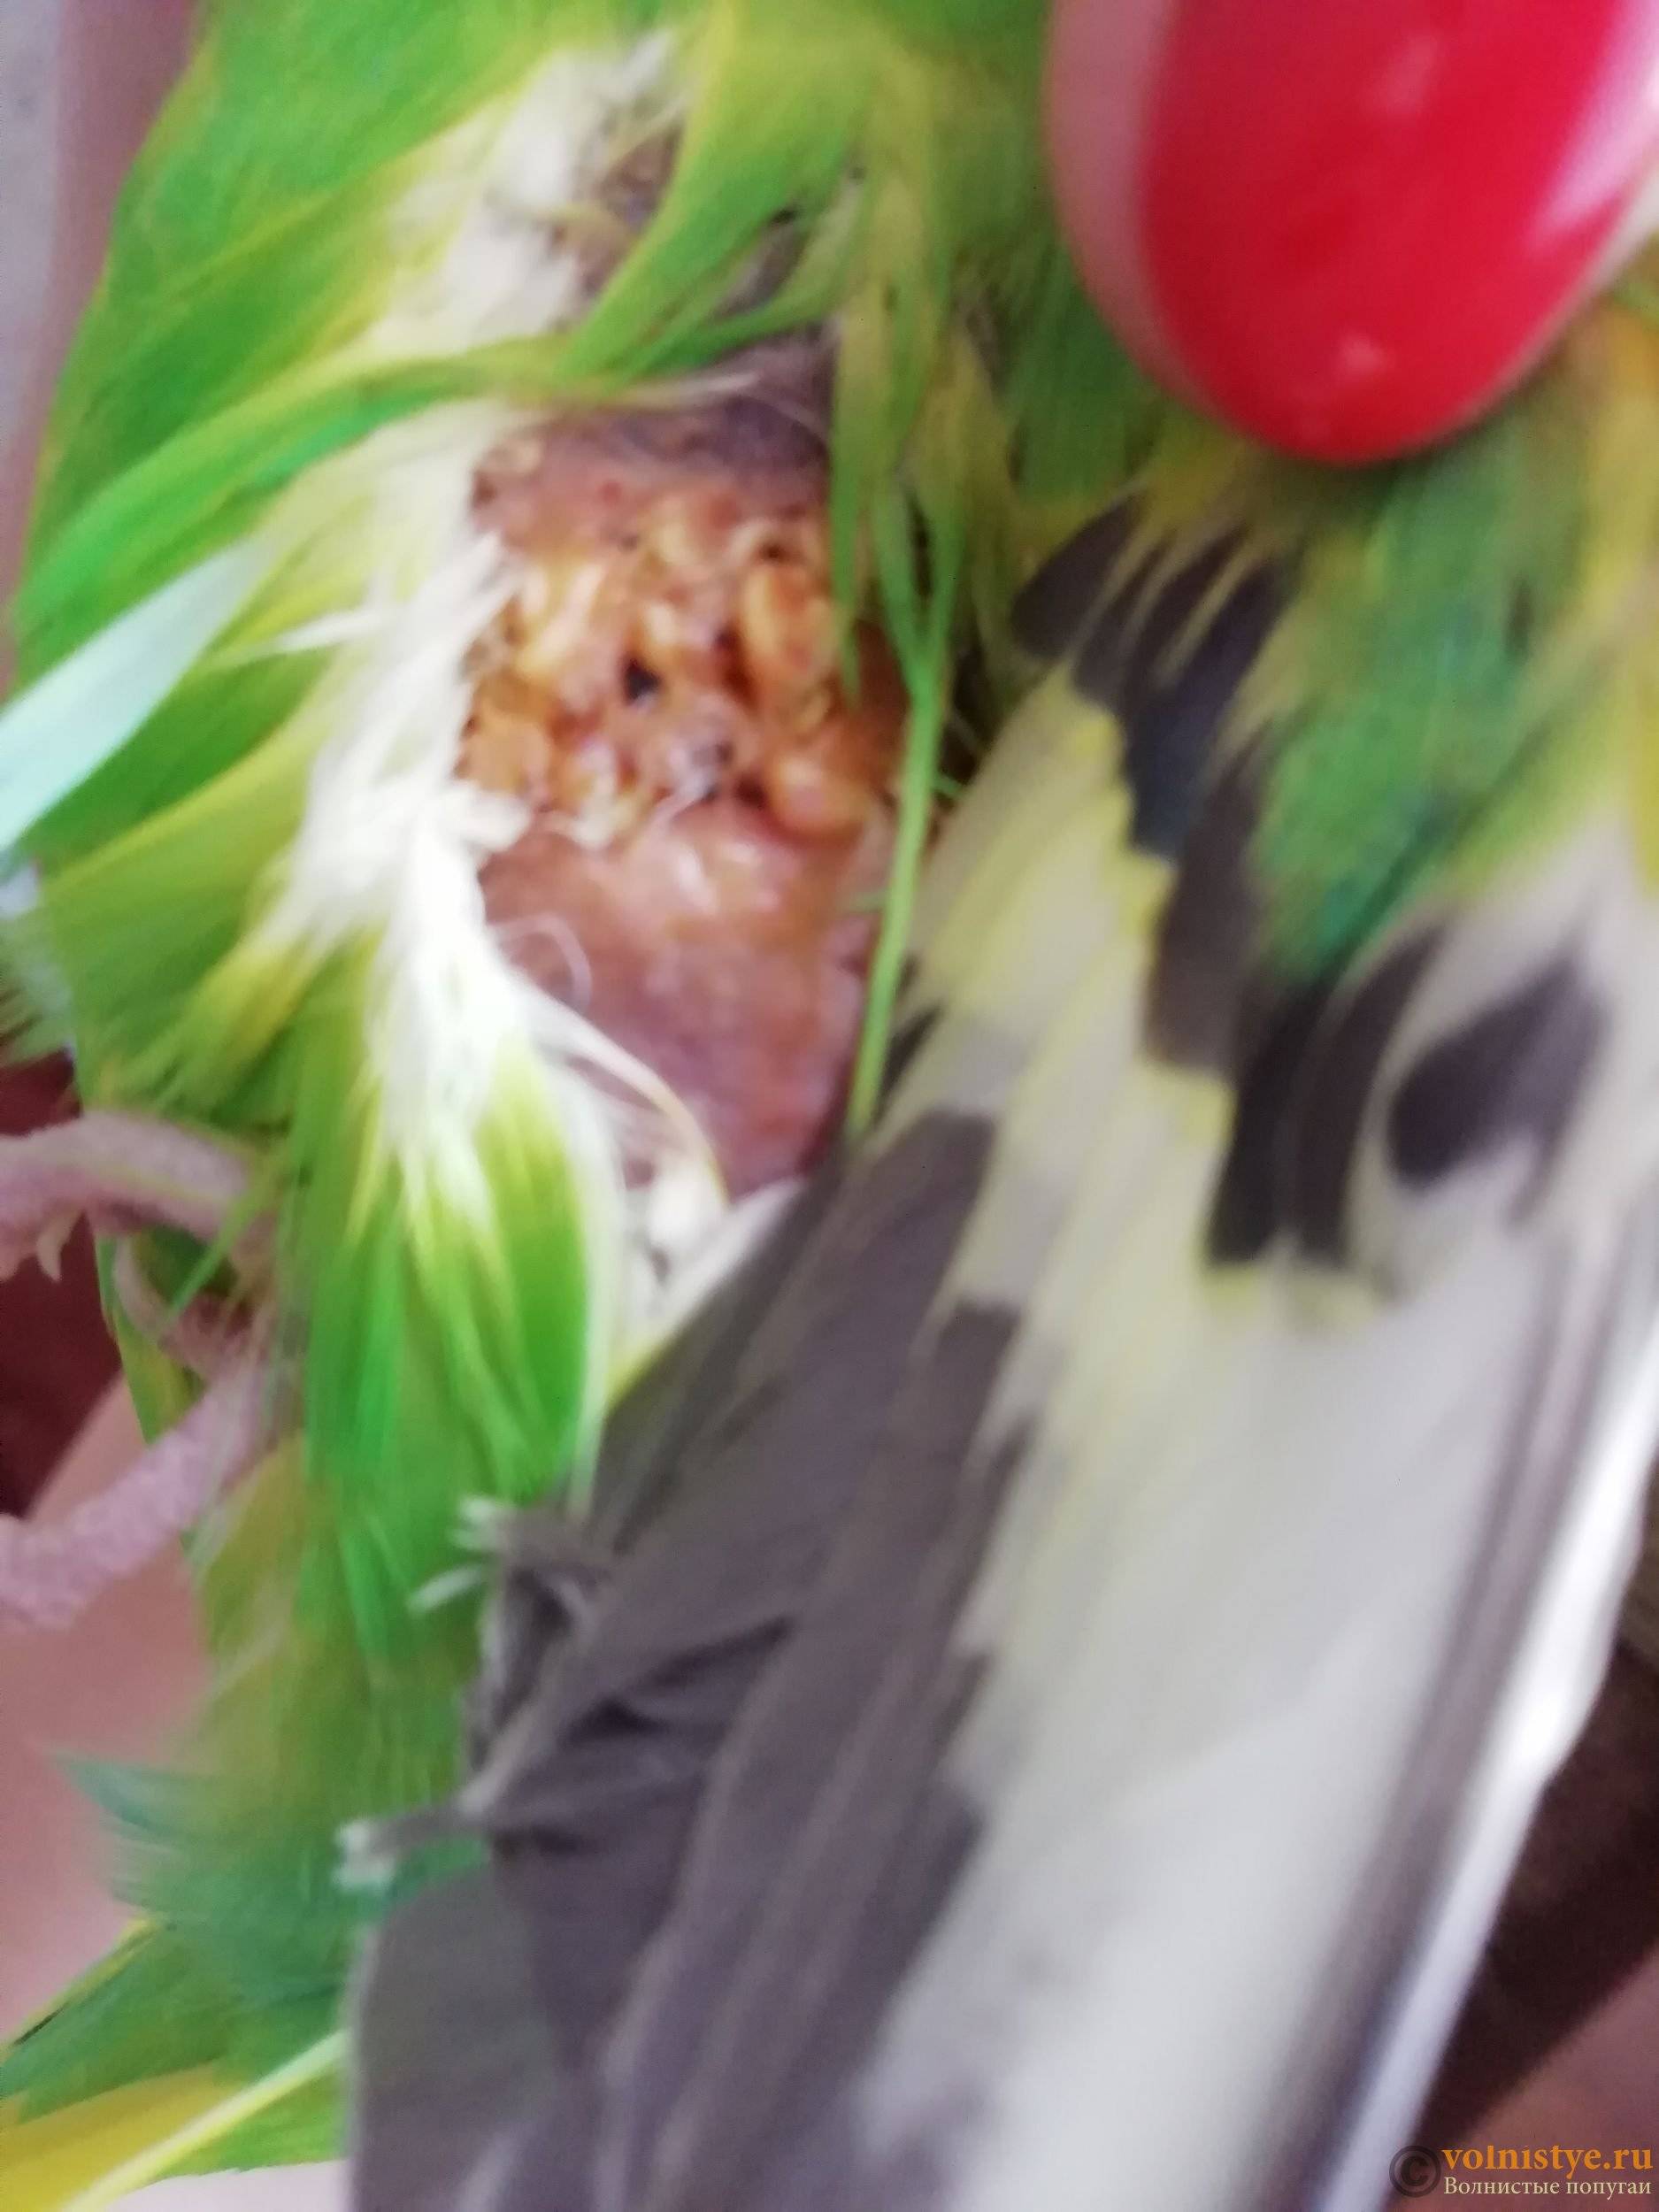 Зоб у волнистого попугая: симптомы воспаления и лечение в домашних условиях